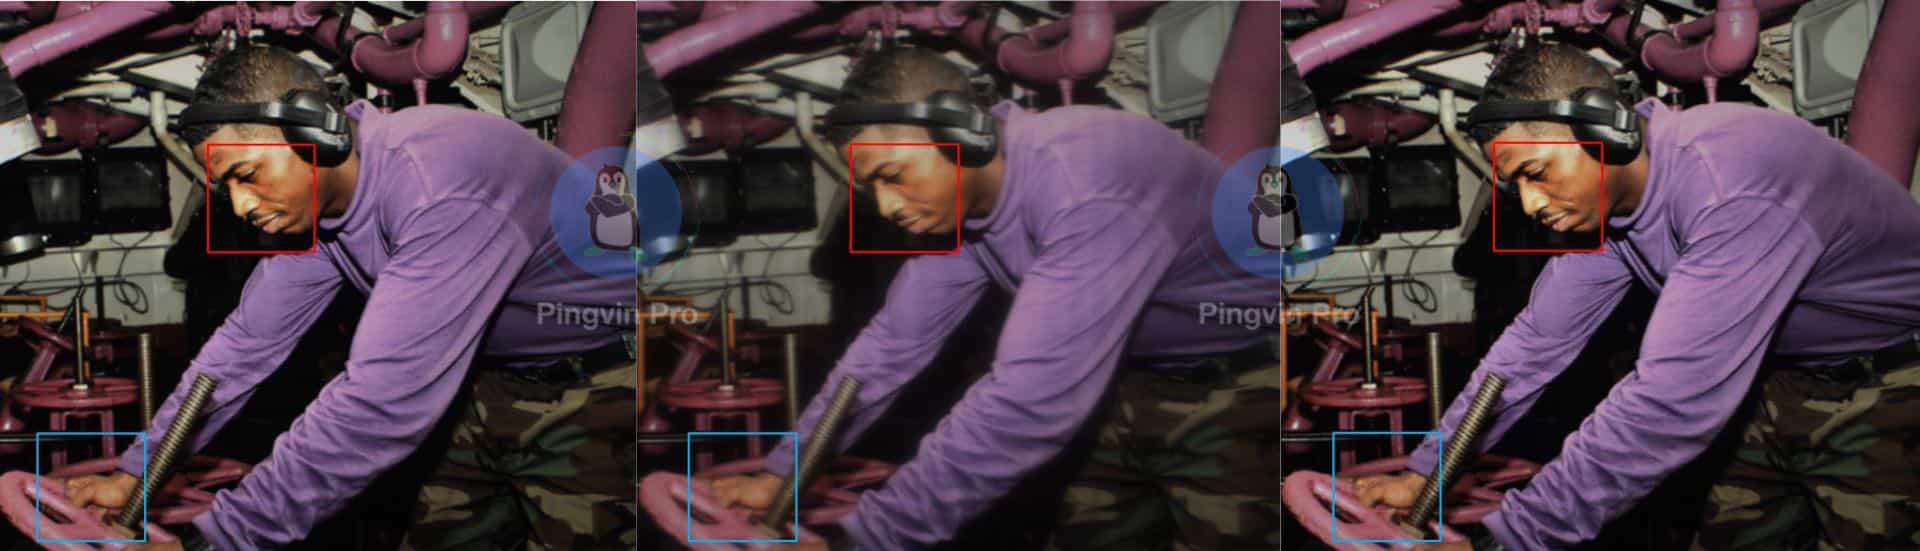 Microsoft Research розробляє технологію покращення для розмитих зображень з підекранних камер